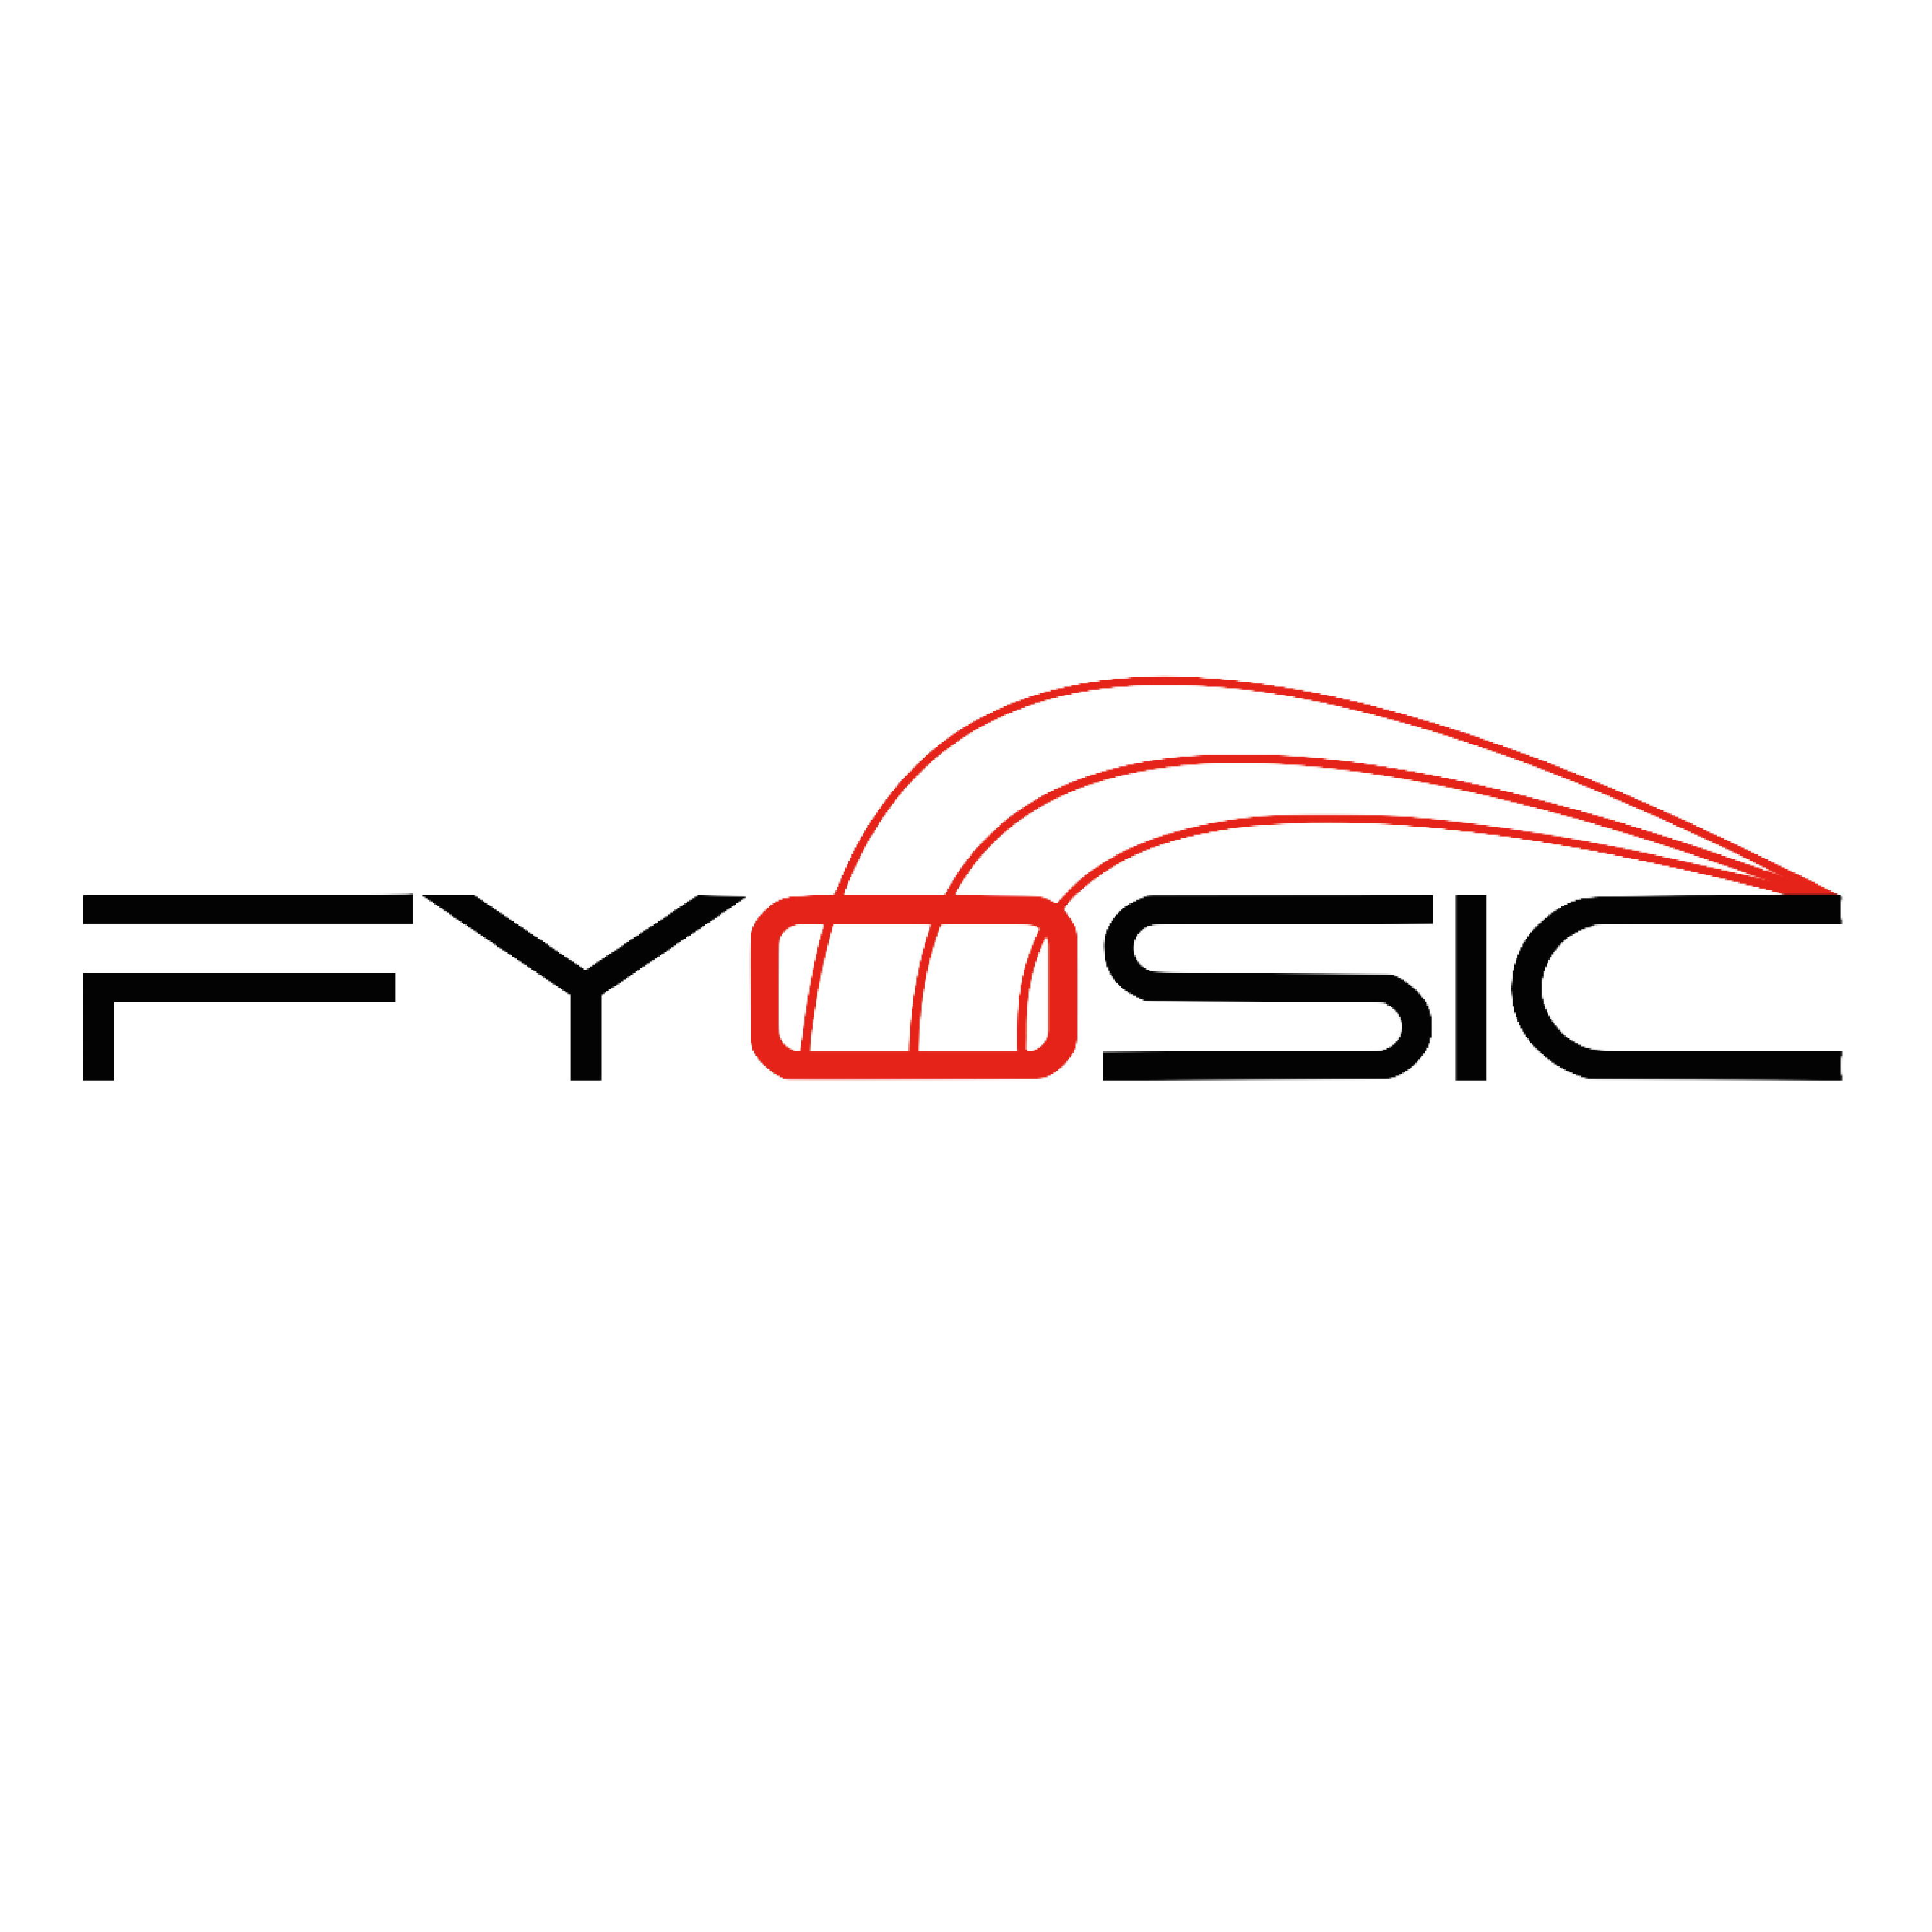 Fyosic Logo